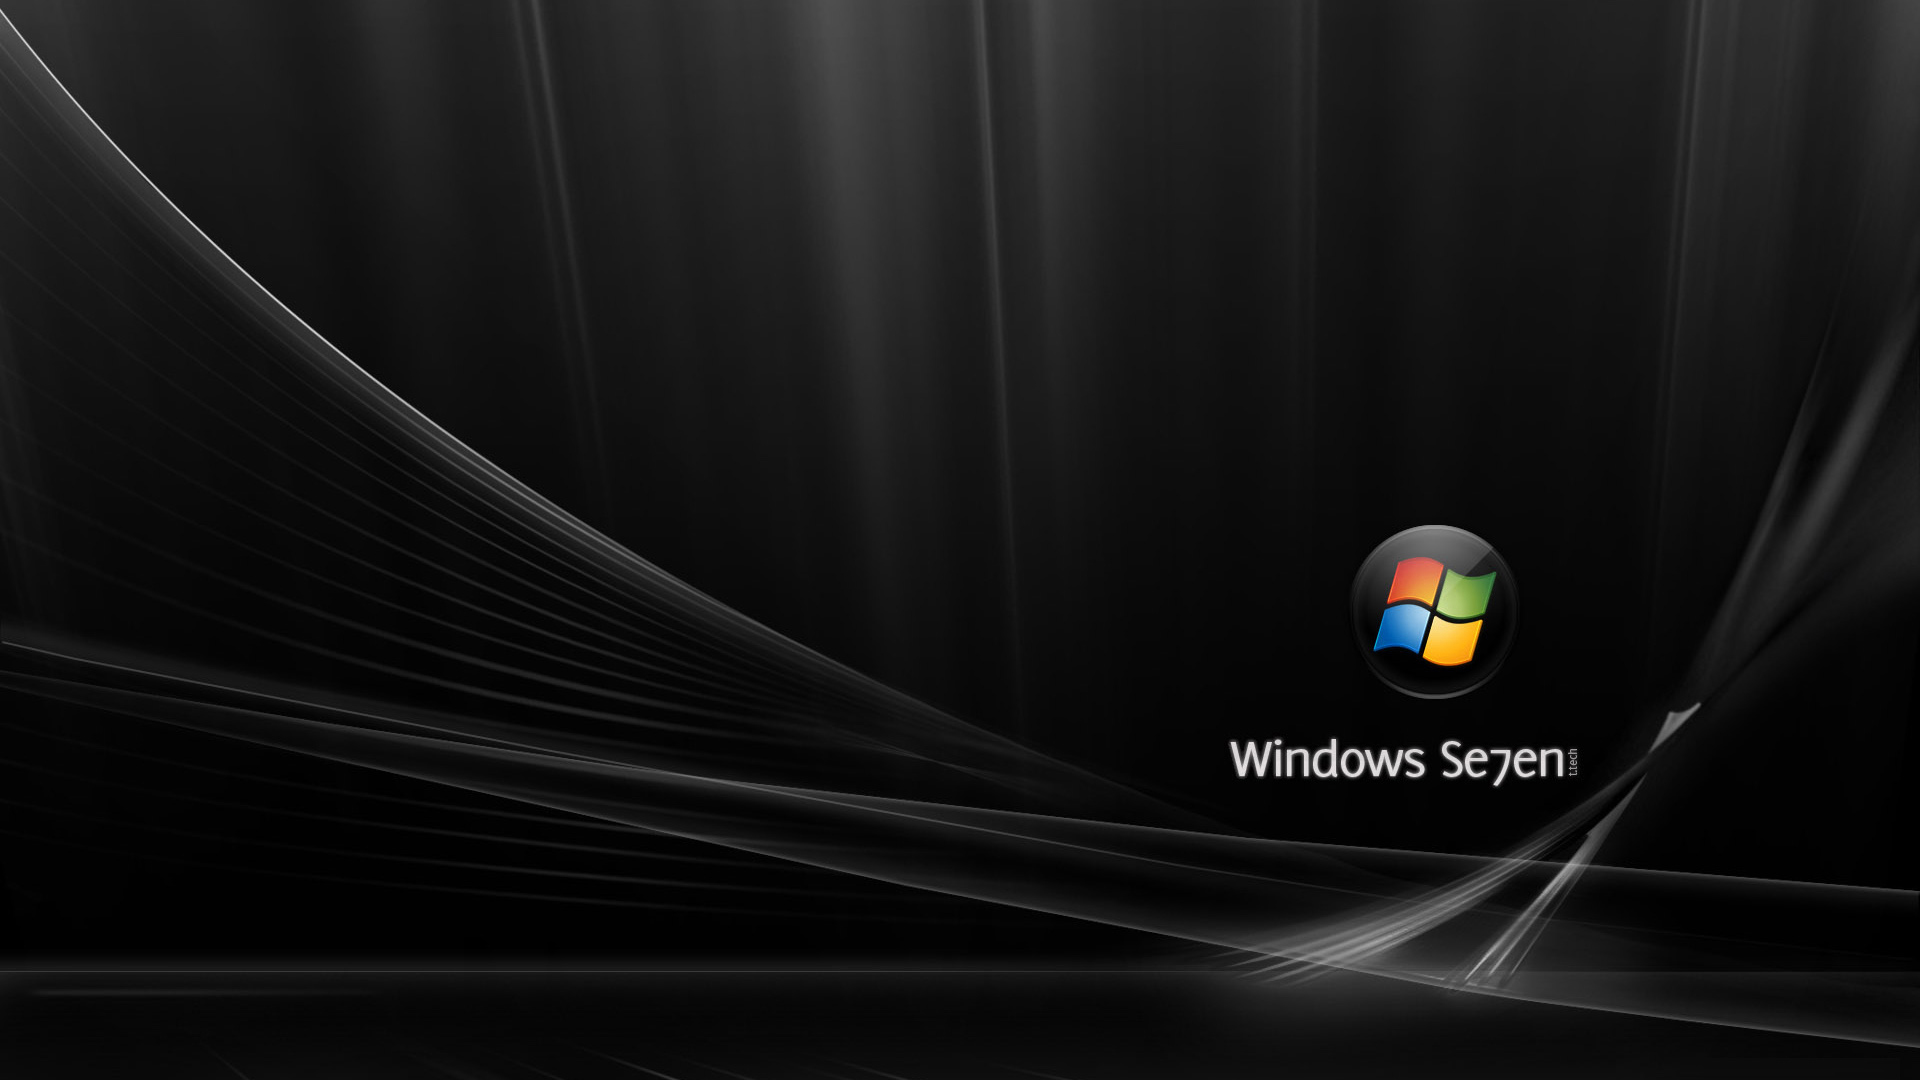 Как установить или поменять обои на рабочем столе Windows 7?